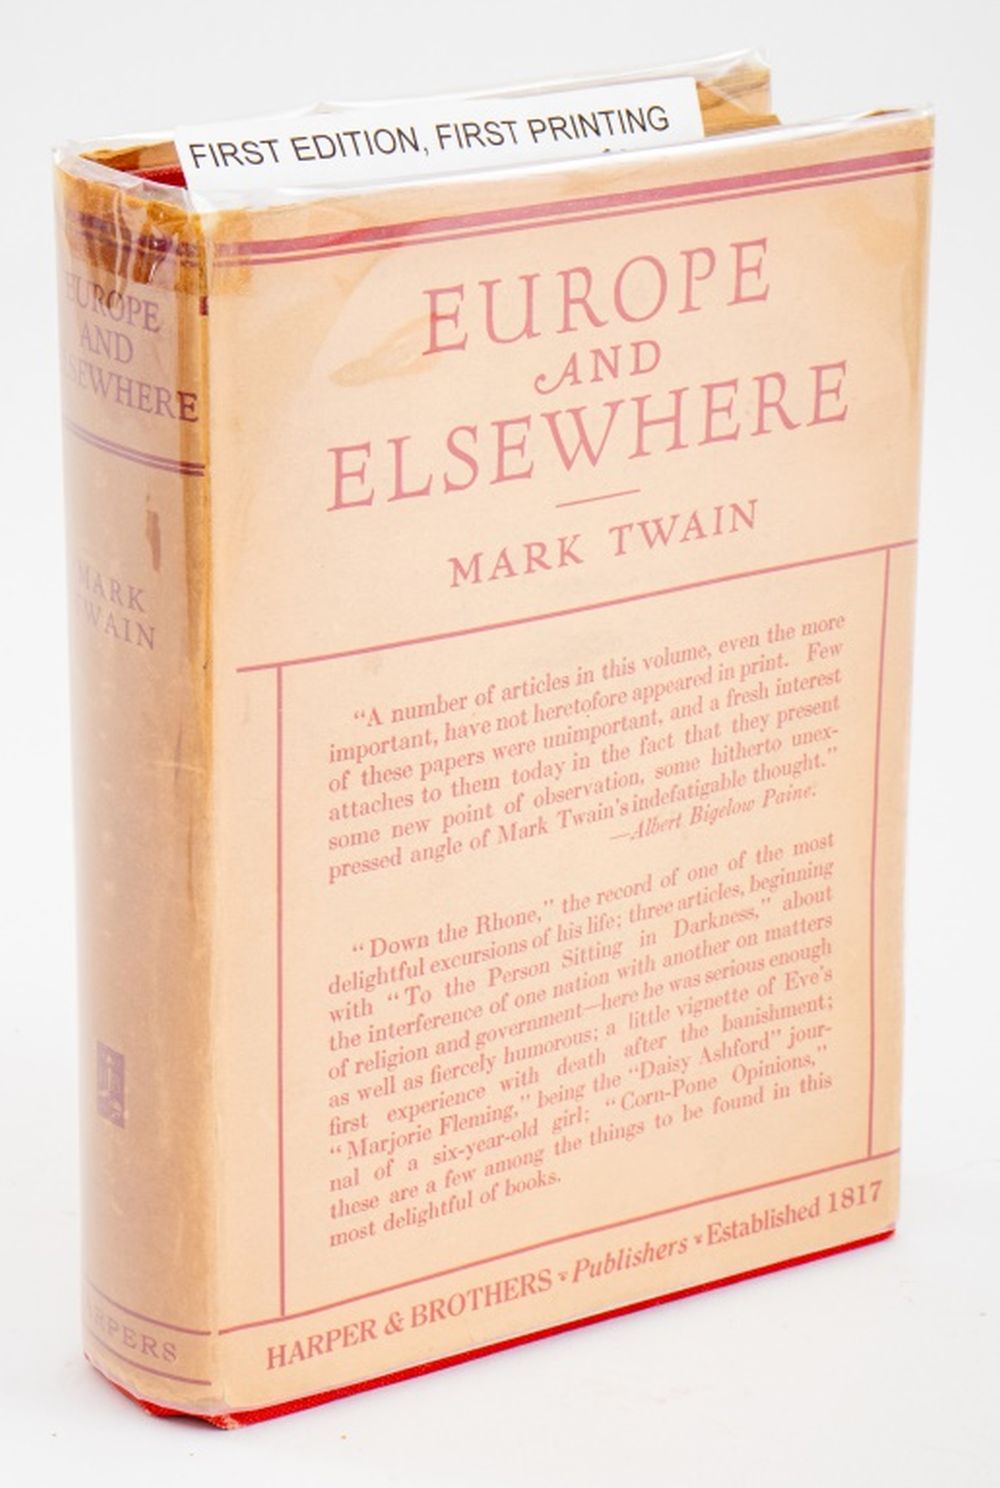 MARK TWAIN "EUROPE & ELSEWHERE,"